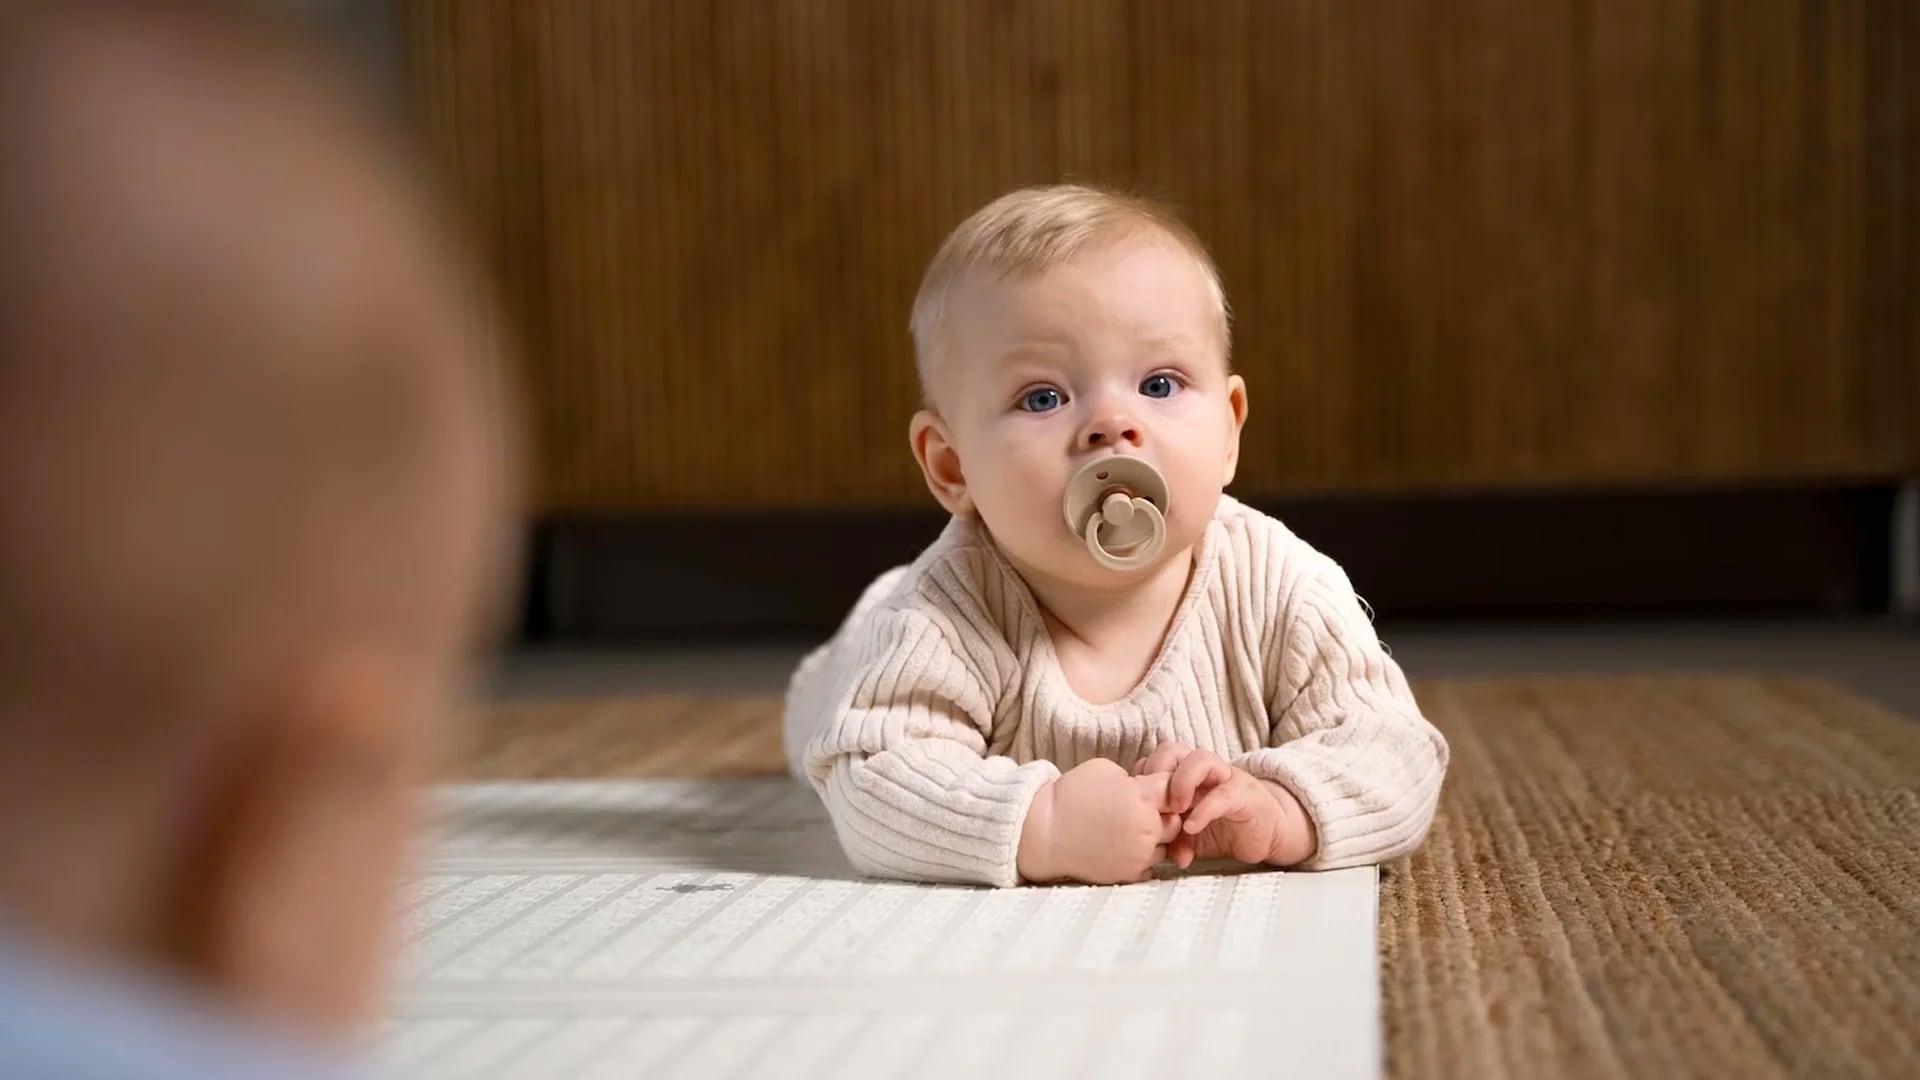 ¿Por qué los bebés tienen hipo?